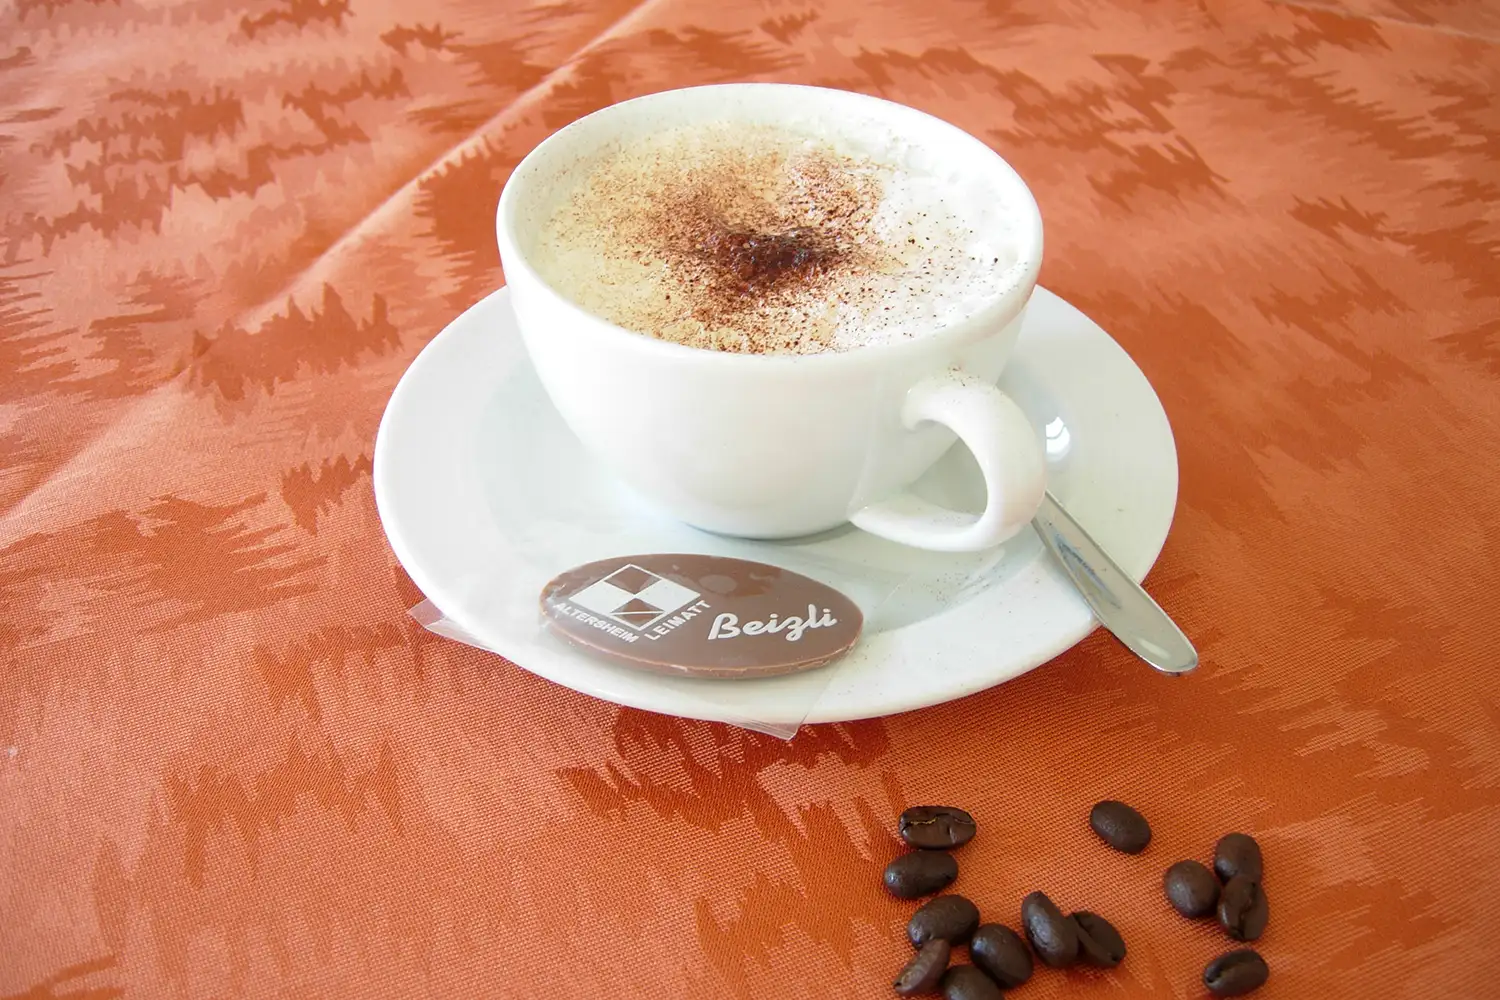 Geniessen Sie einen feinen Kaffee, Cappuccino oder Tee bei uns im Beizli.